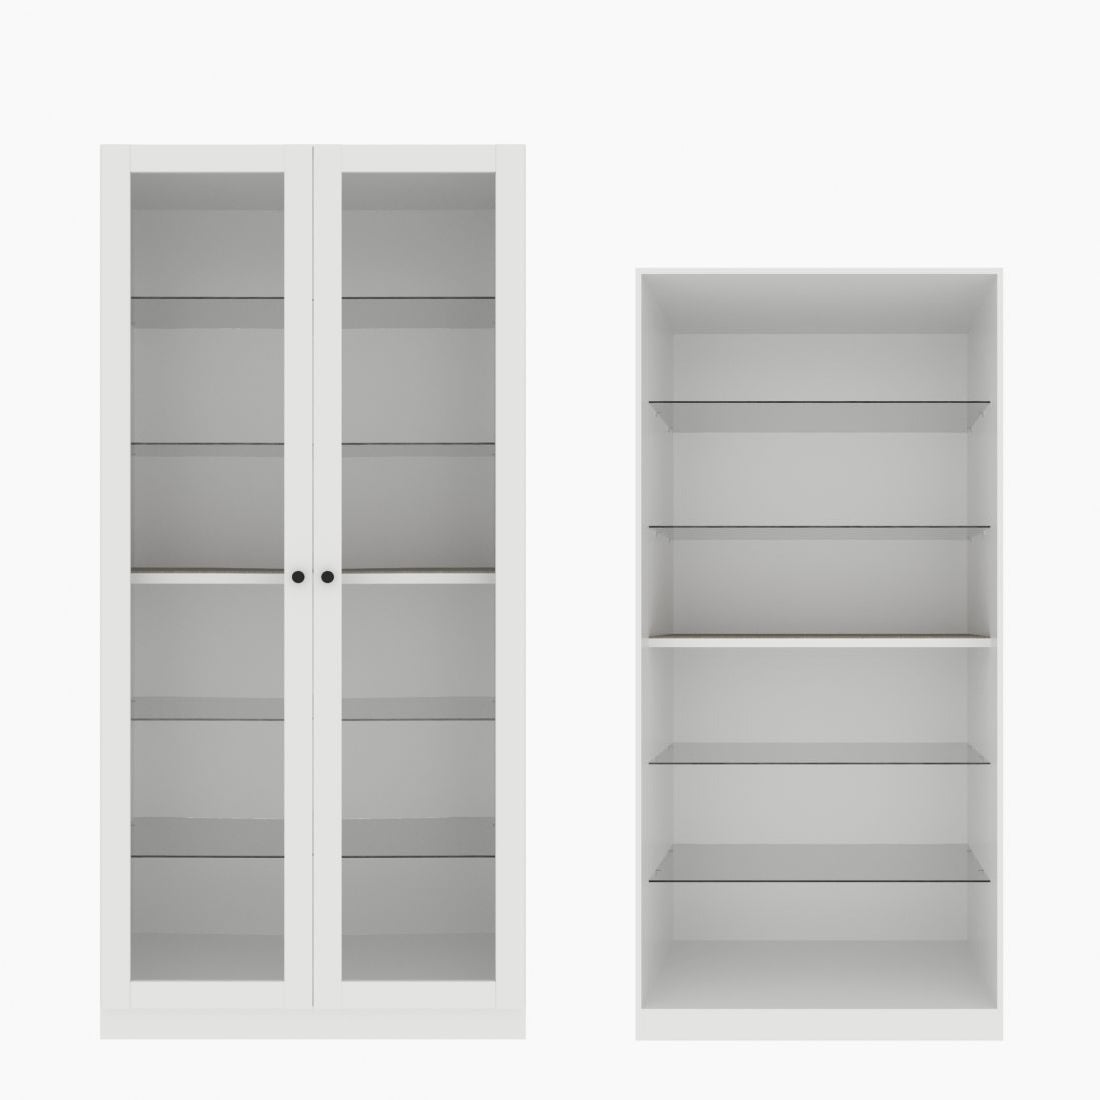 ตู้โชว์ชั้นกระจก OP-H ขนาด 100 ซม. รุ่น Blox สีขาว&กระจกใส01